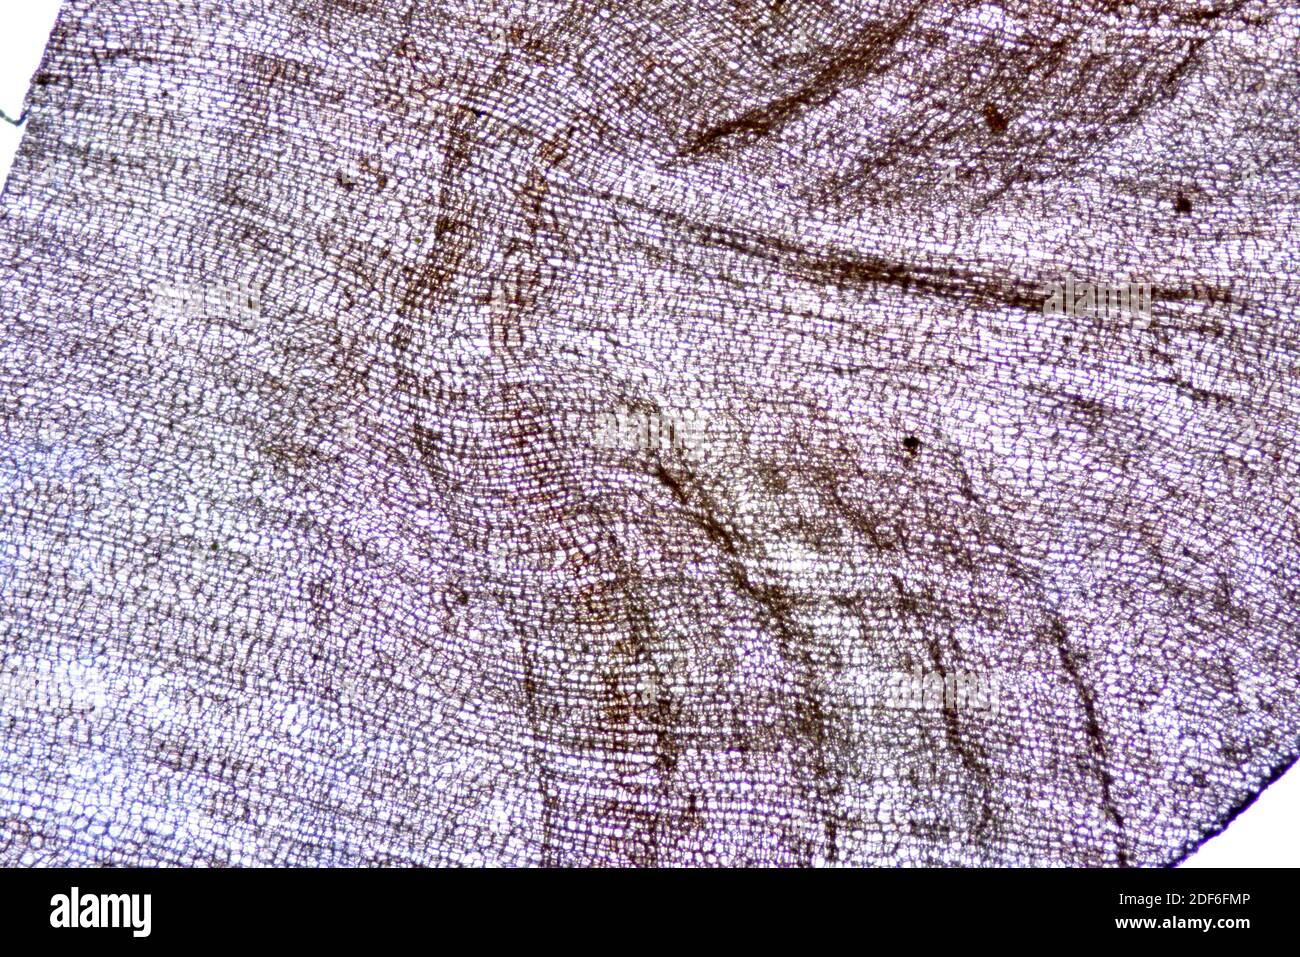 Corcho de Quercus suber. Microscopio óptico X40. Foto de stock